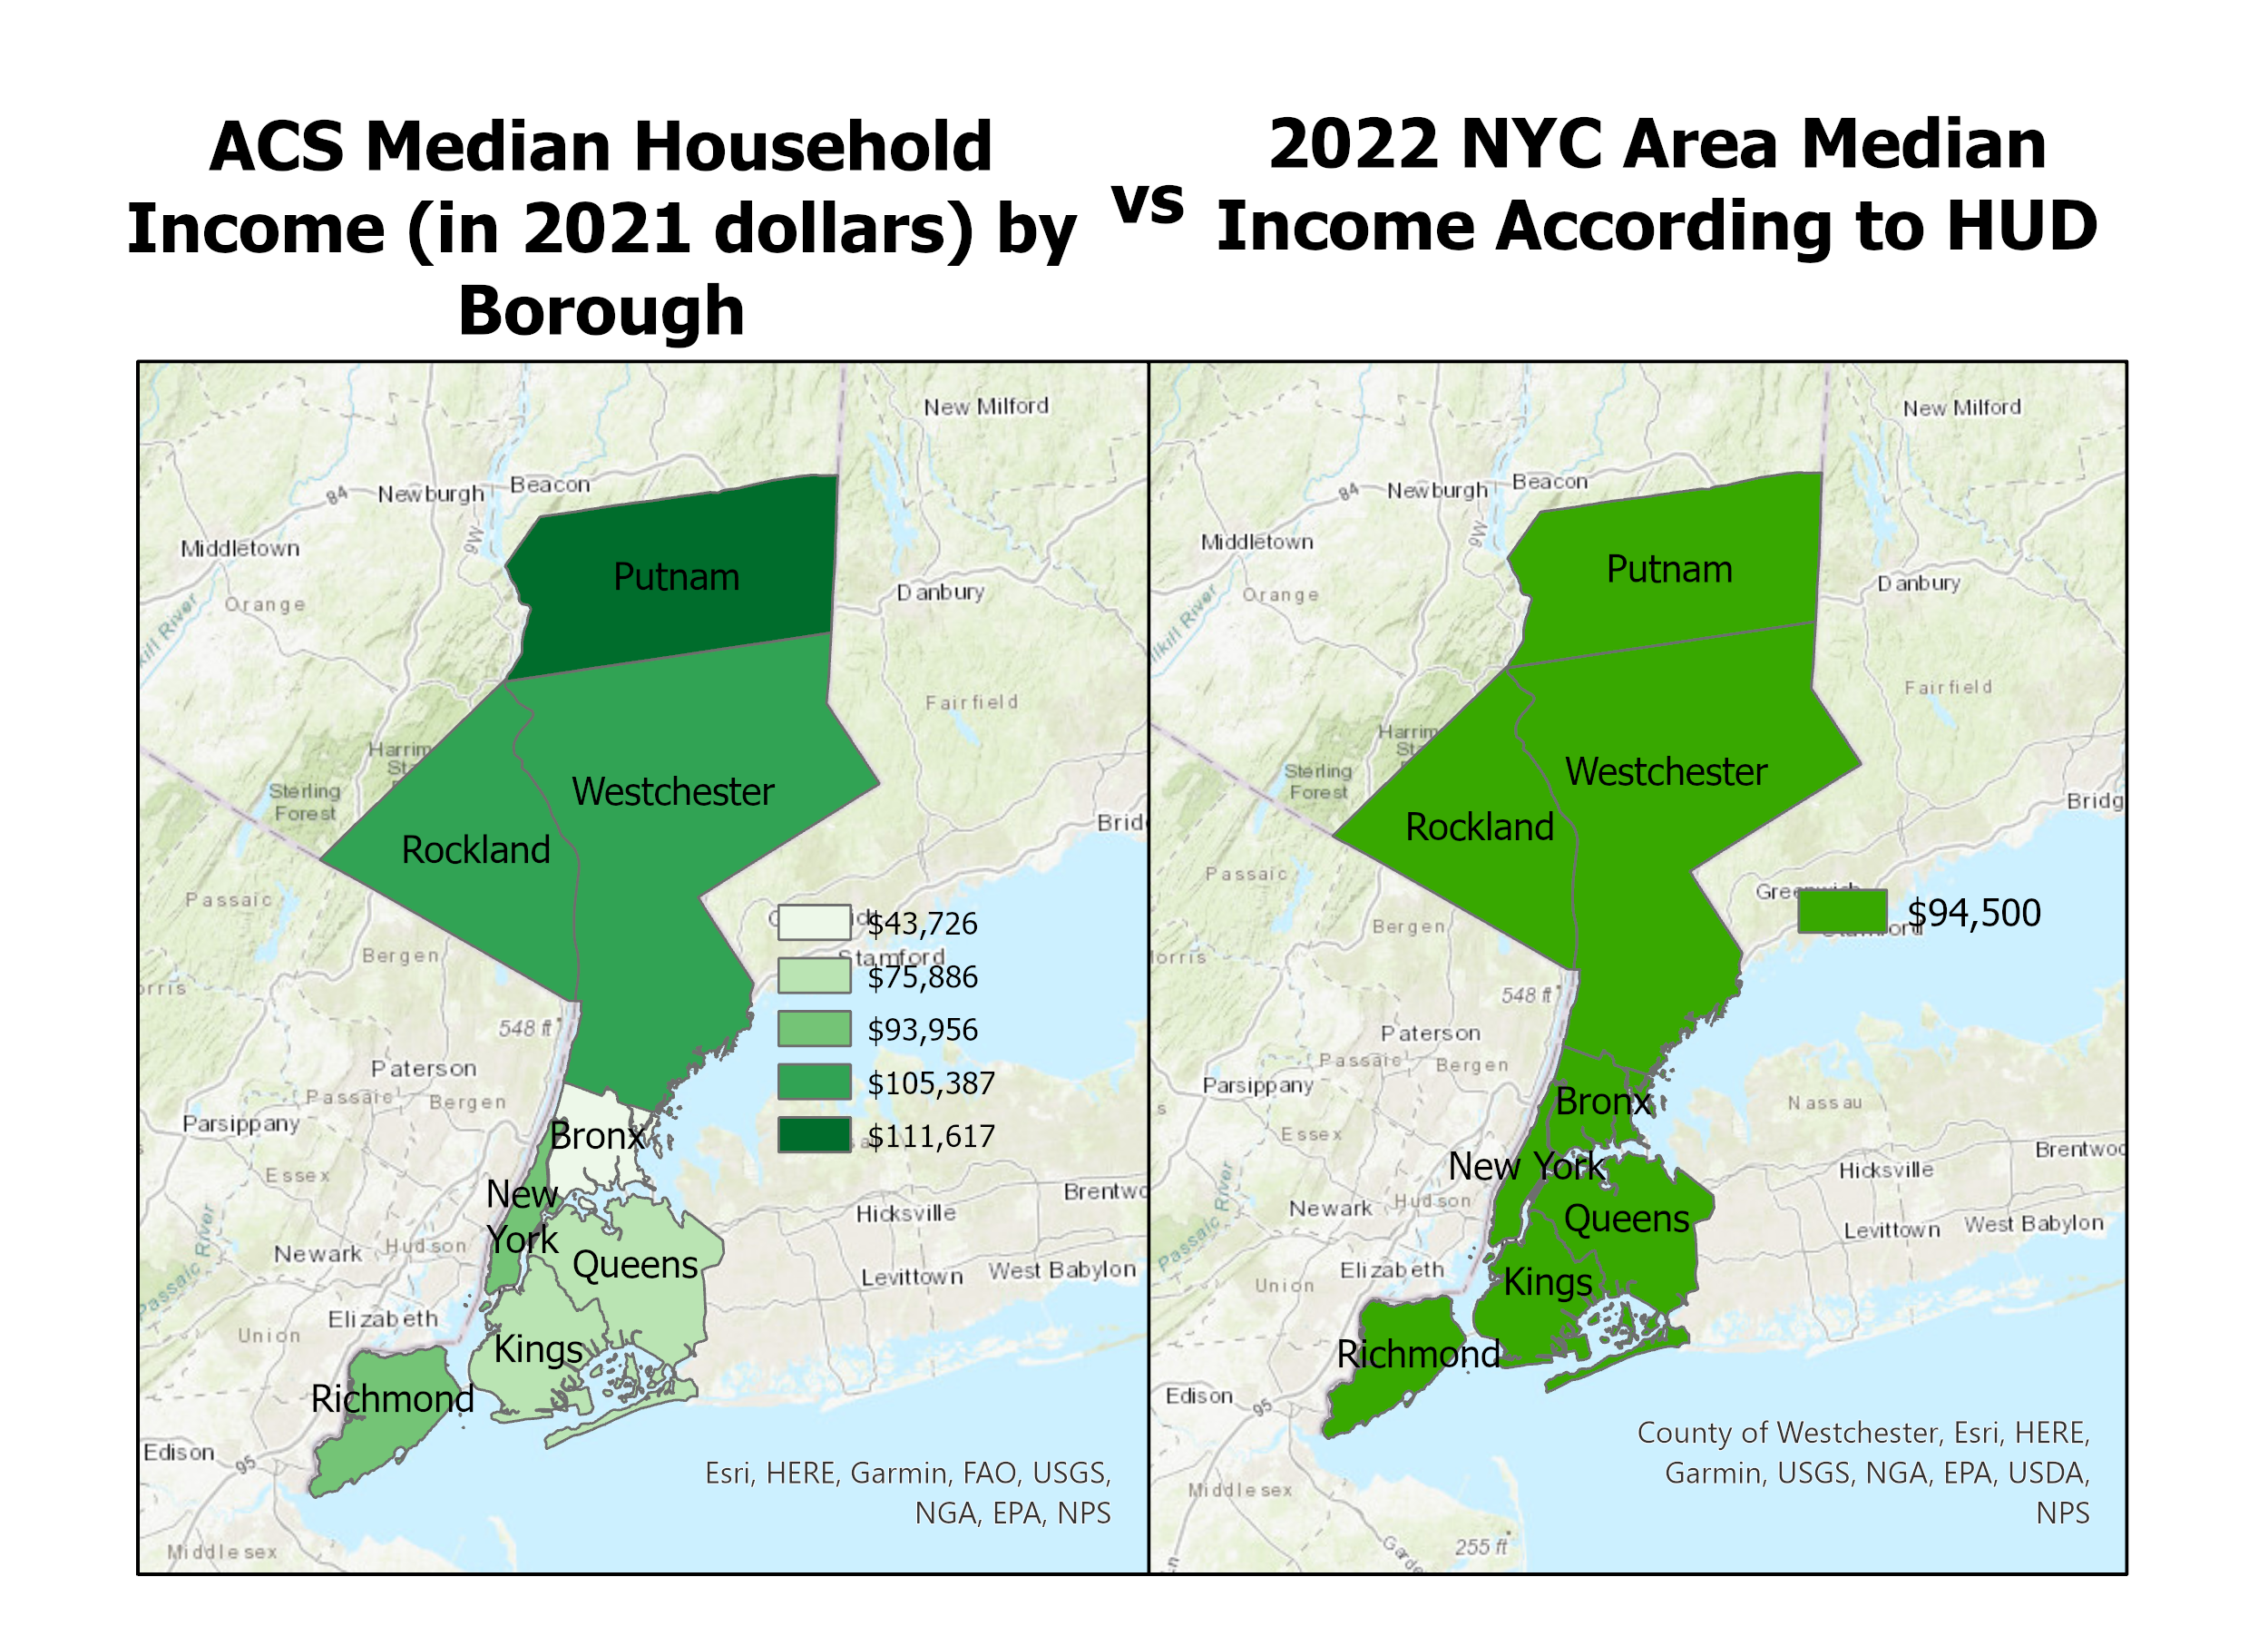 American Community Survey income data vs. HUD's income data